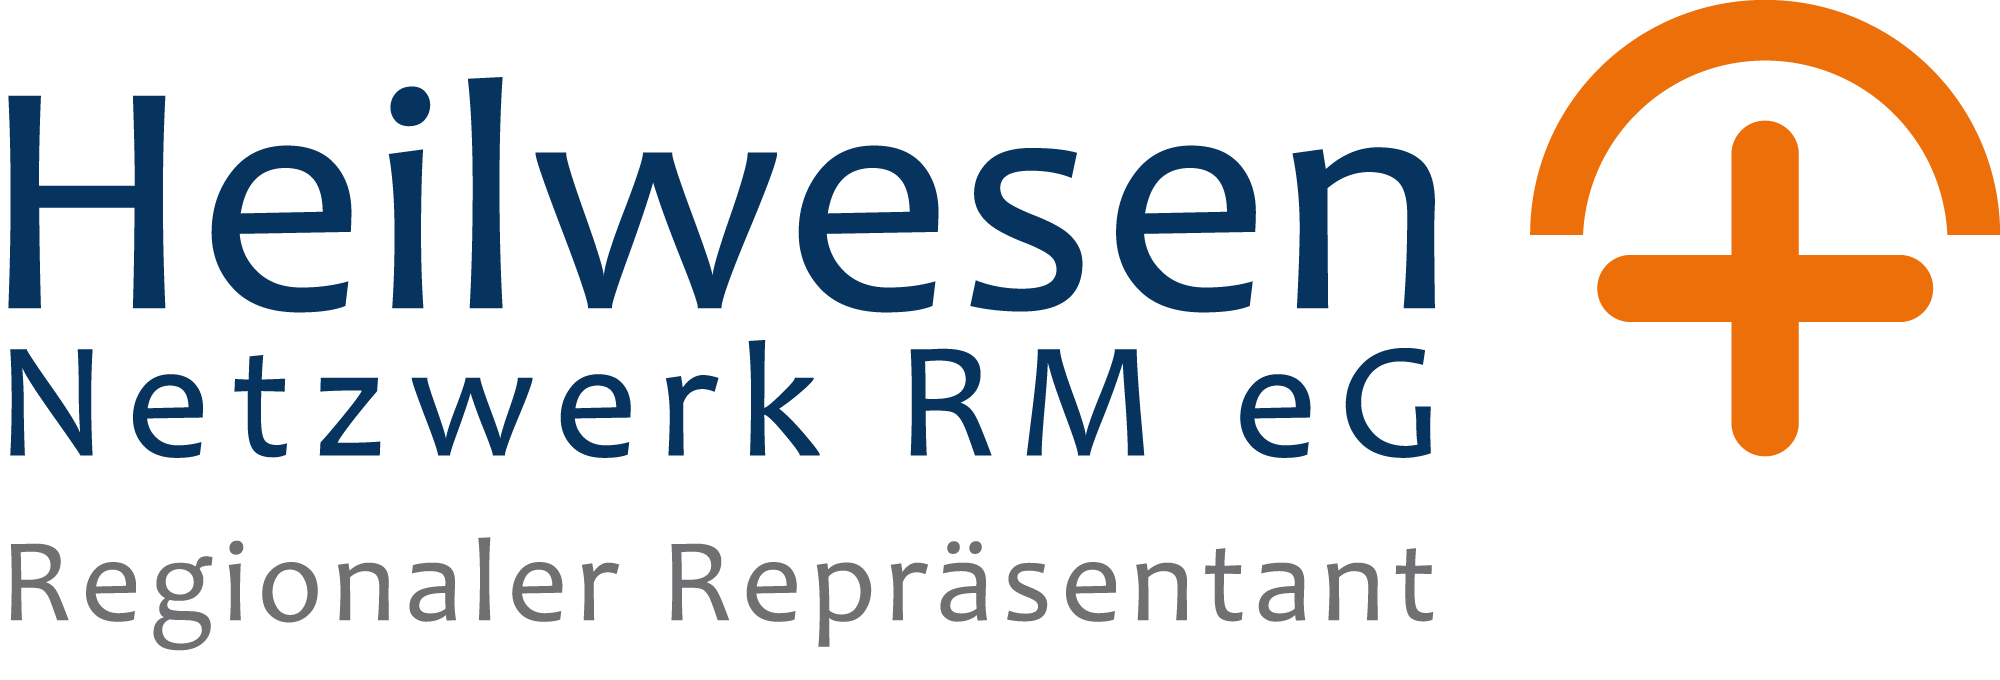 Repräsentant der Heilwesennetzwerk RM eG in Köln und Bonn